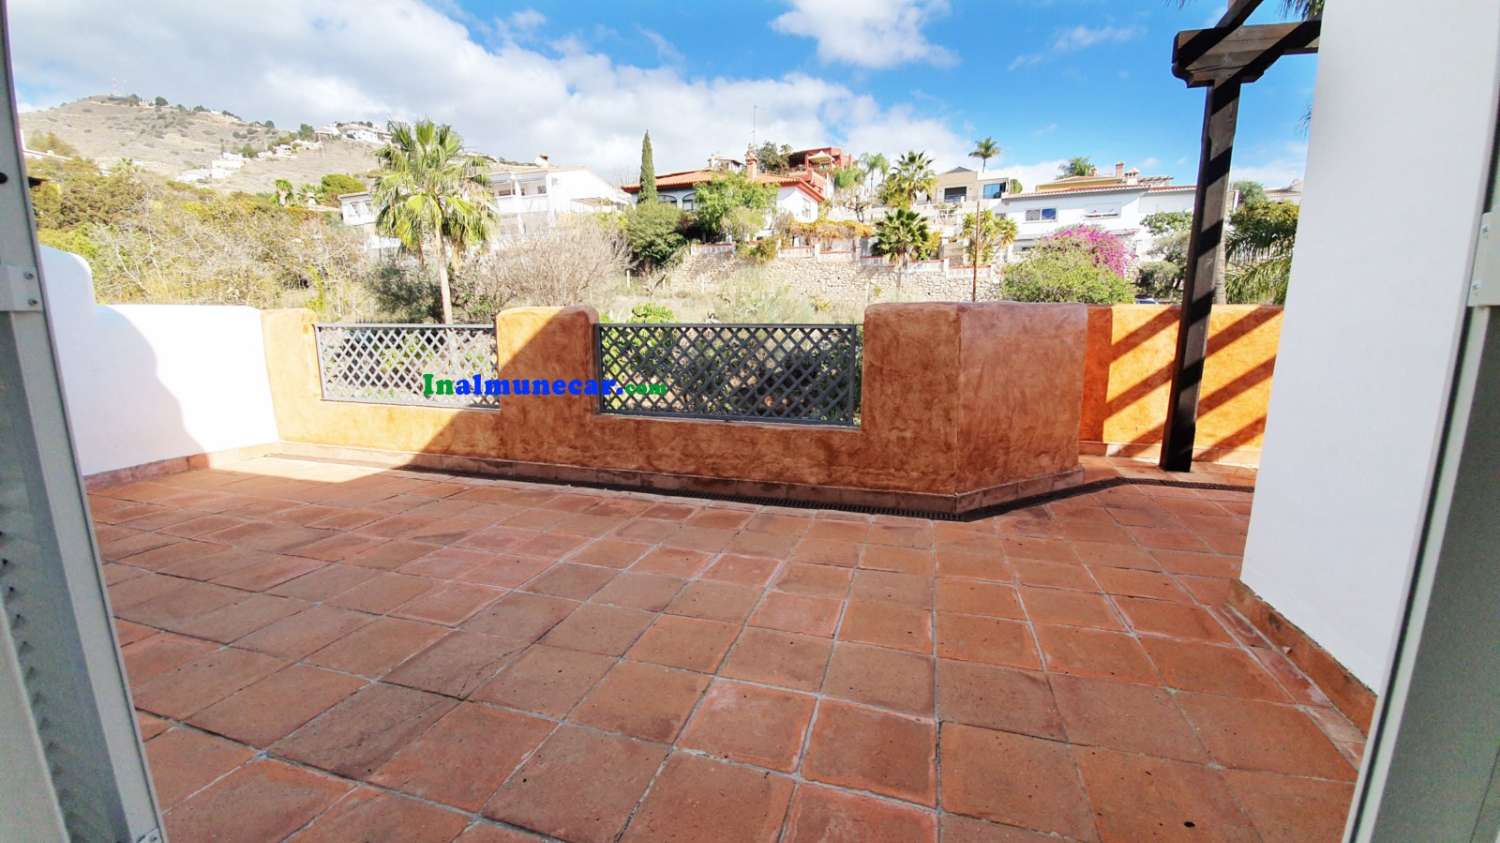 Smuk lejlighed til salg i Almuñecar, med fælles pool og frodige haver